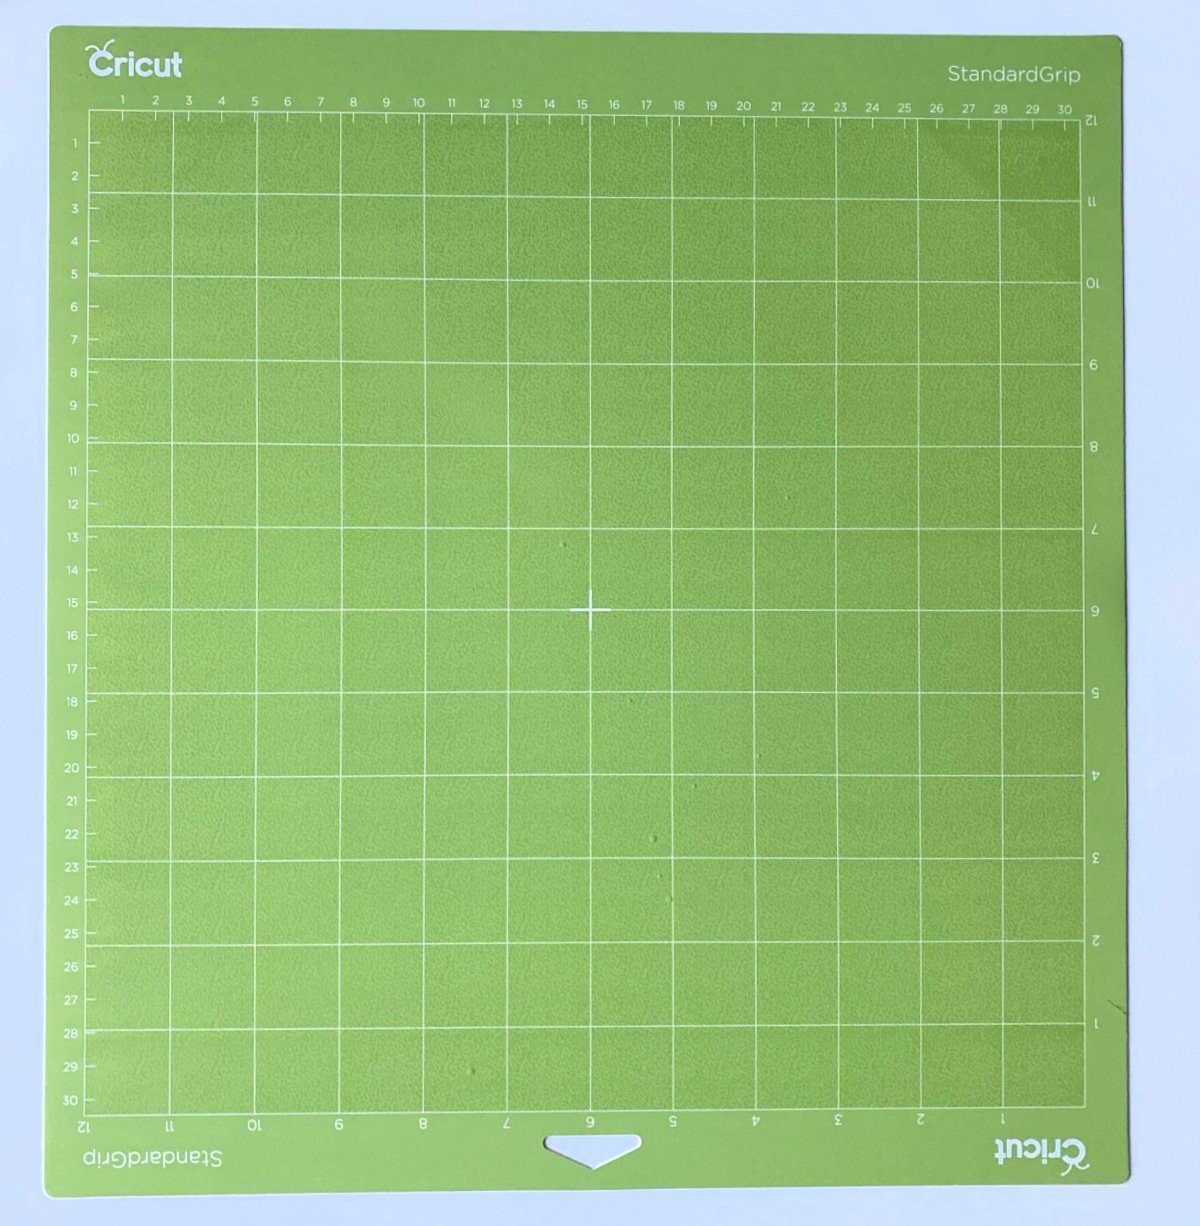 Neon green Cricut StandardGrip Mat on a white surface.